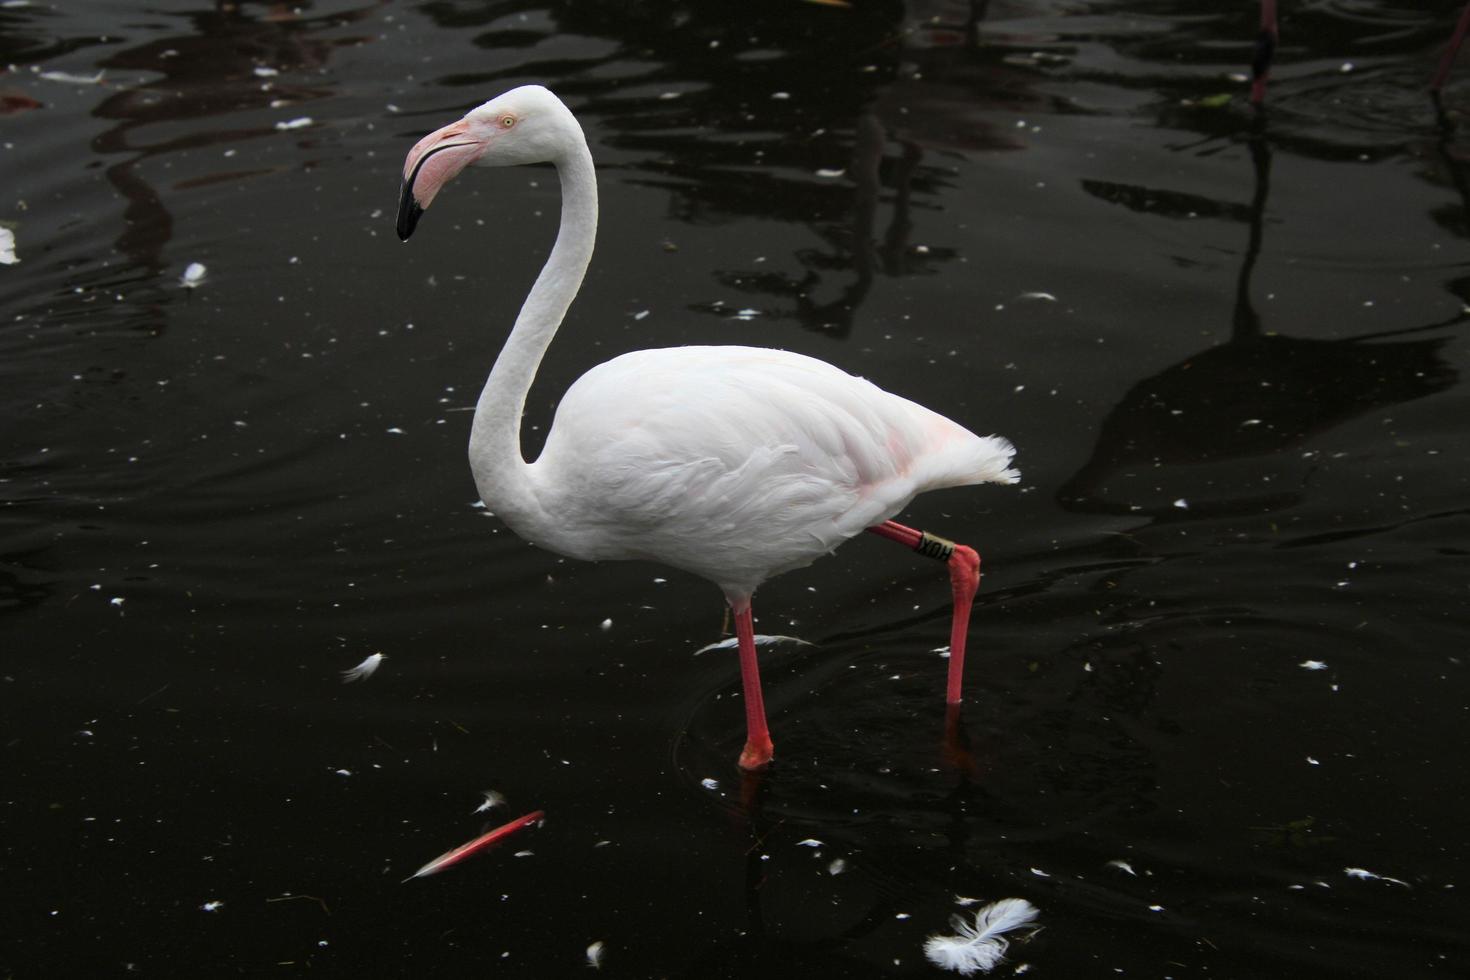 uma visão de um flamingo na água foto